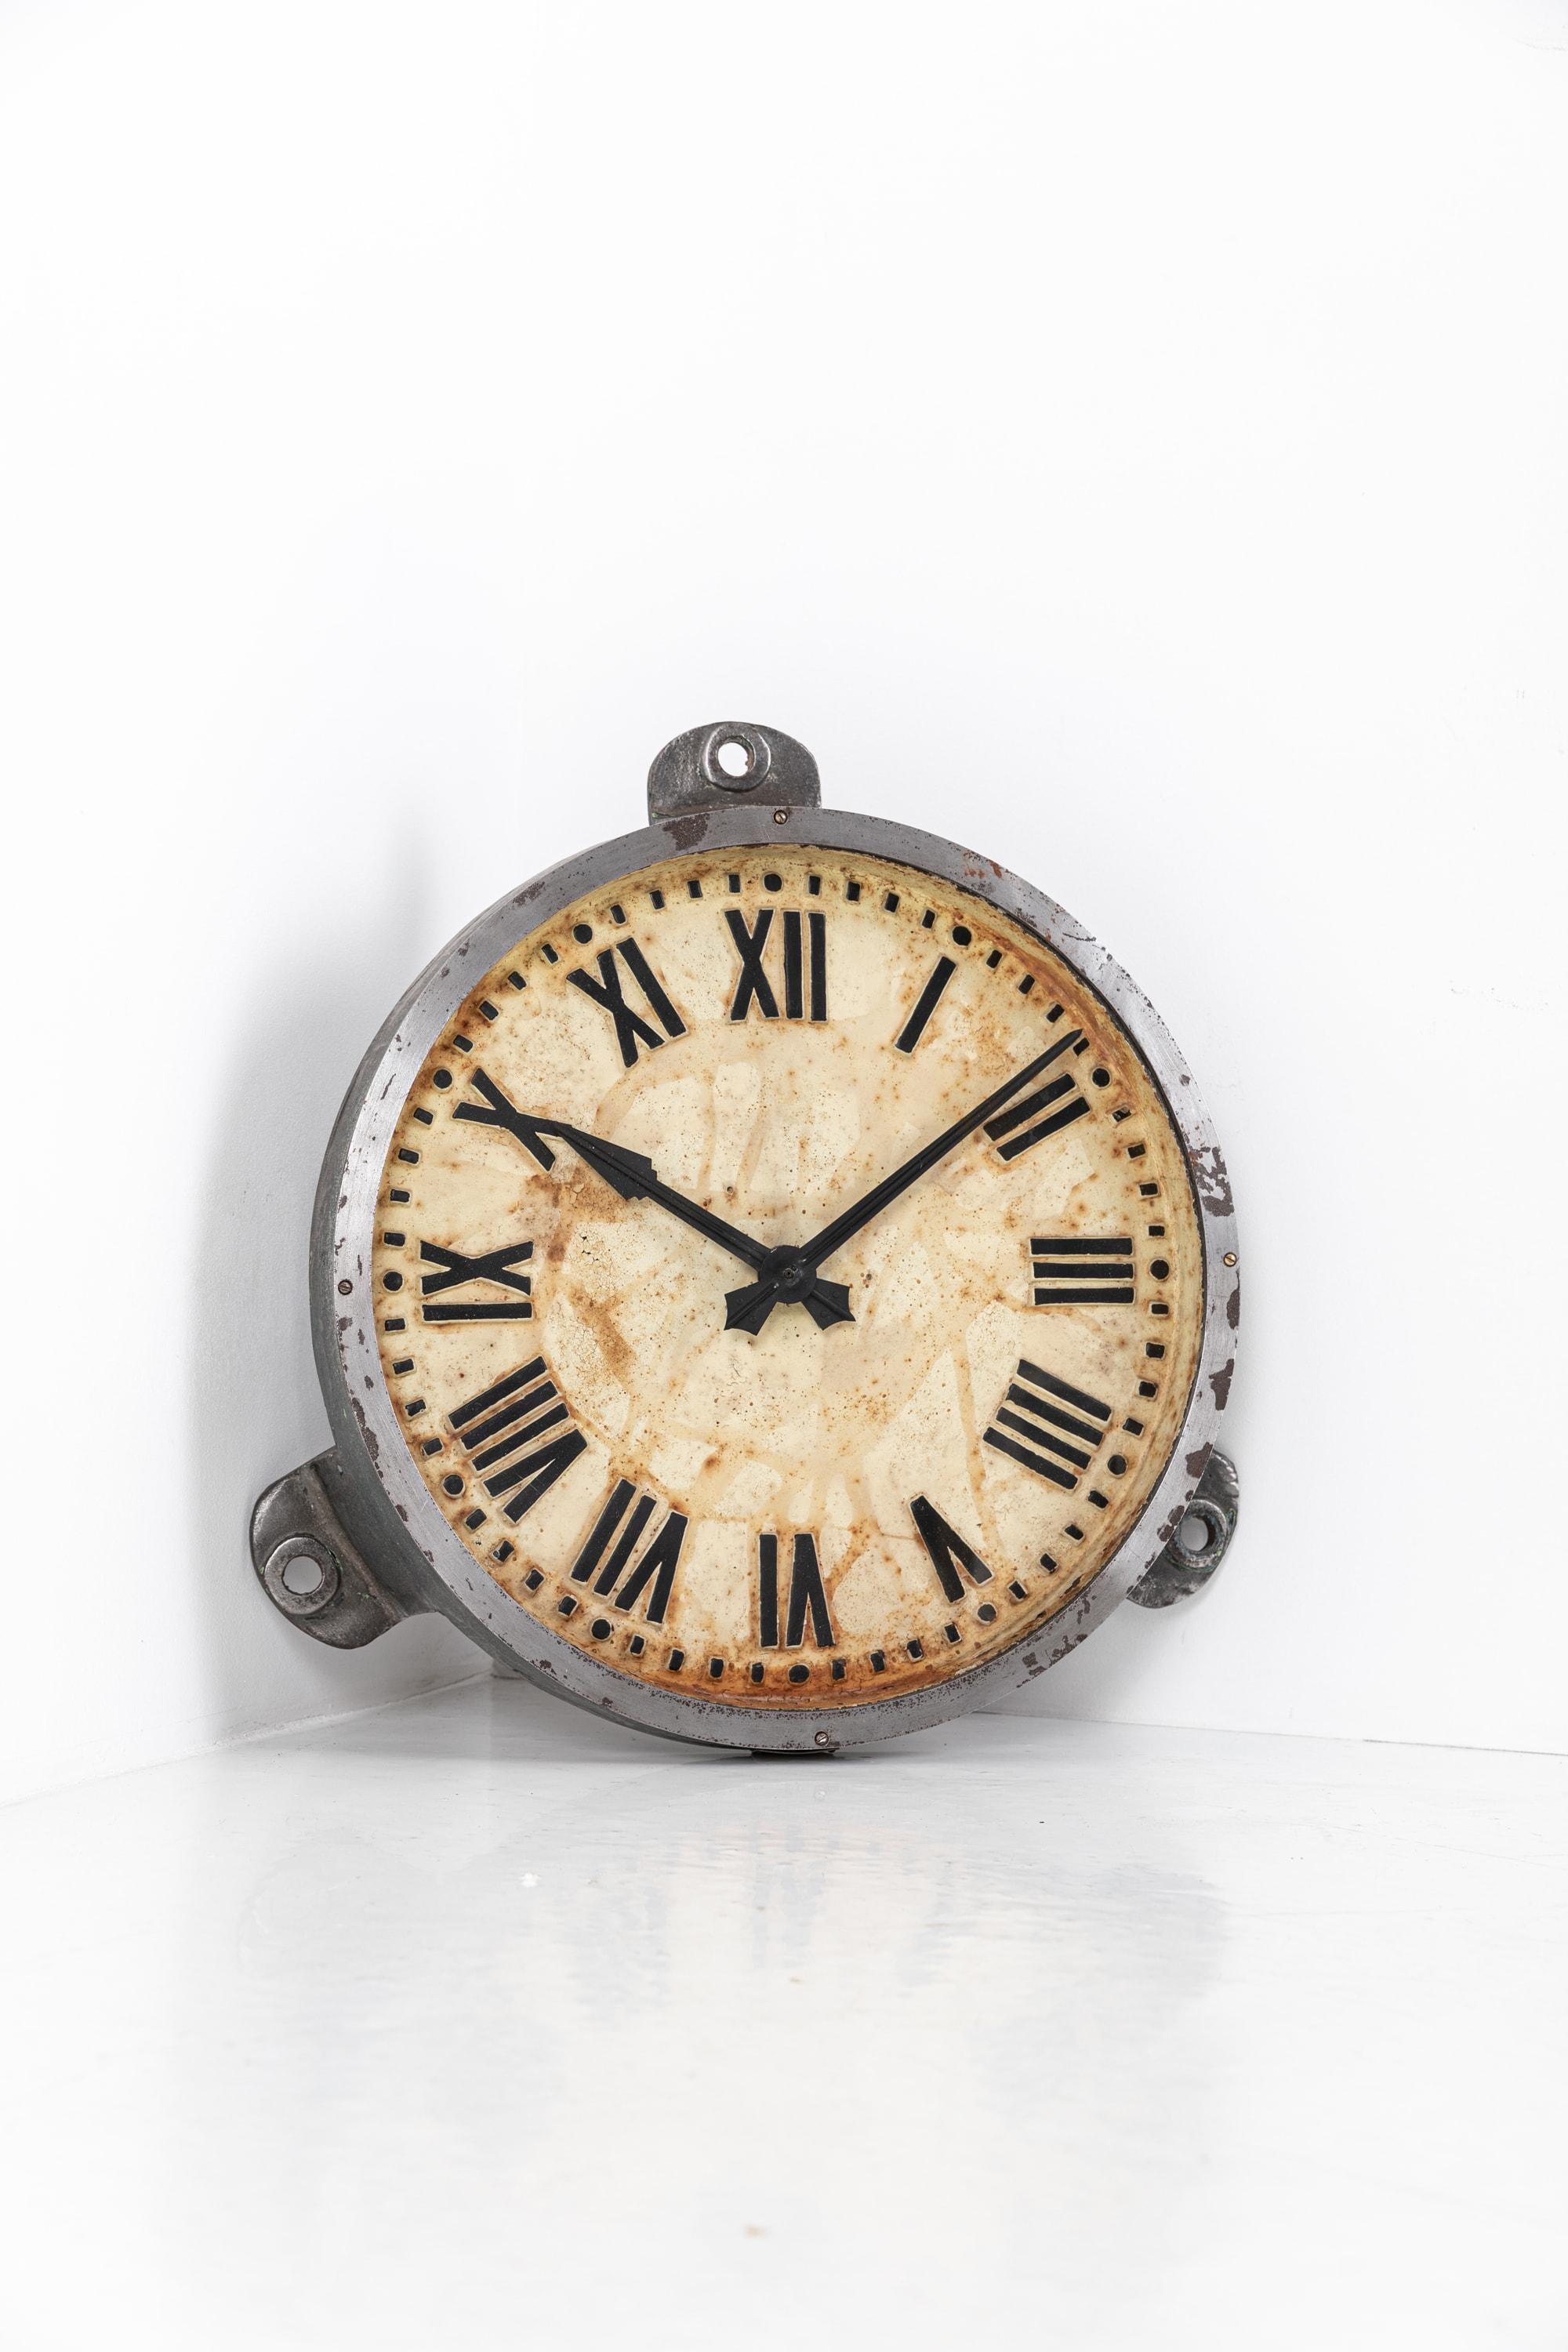 Gran reloj de pared industrial de fundición Gents of Leicester Factory, c.1930 Vidrio en venta